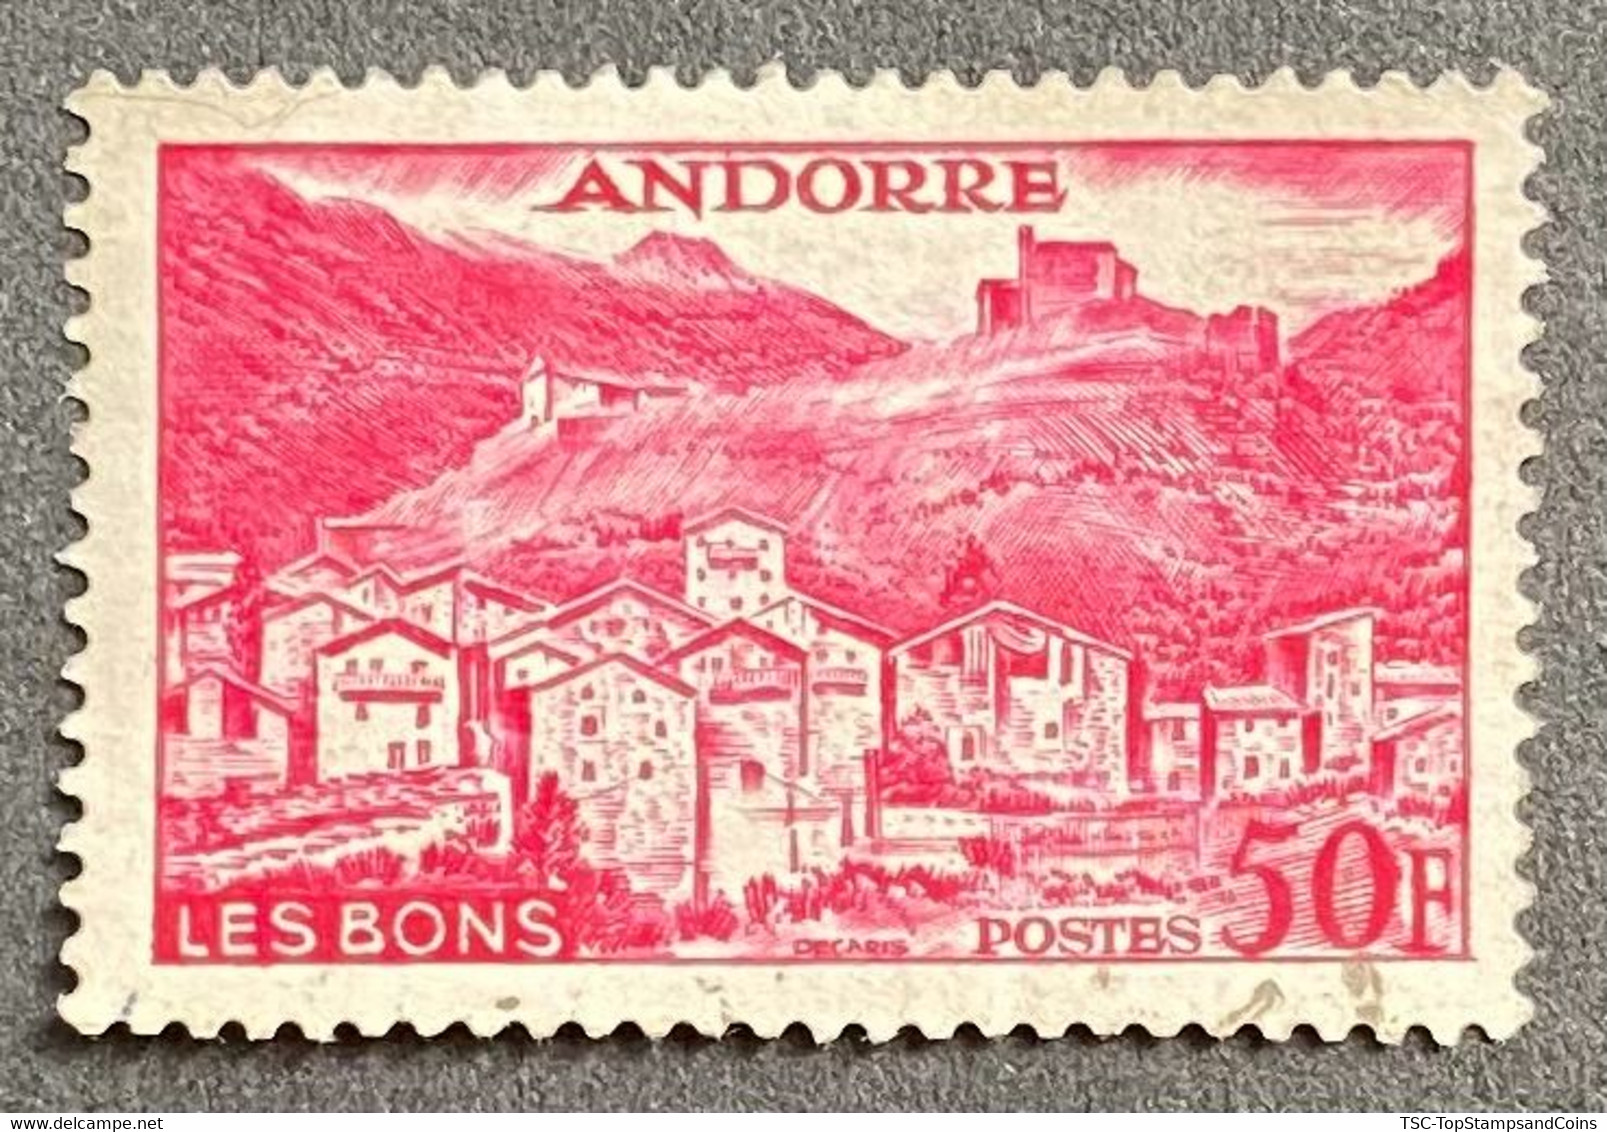 ADFR0152U - Paysages De La Principauté - 50 F Used Stamp - French Andorra - 1955 - Oblitérés